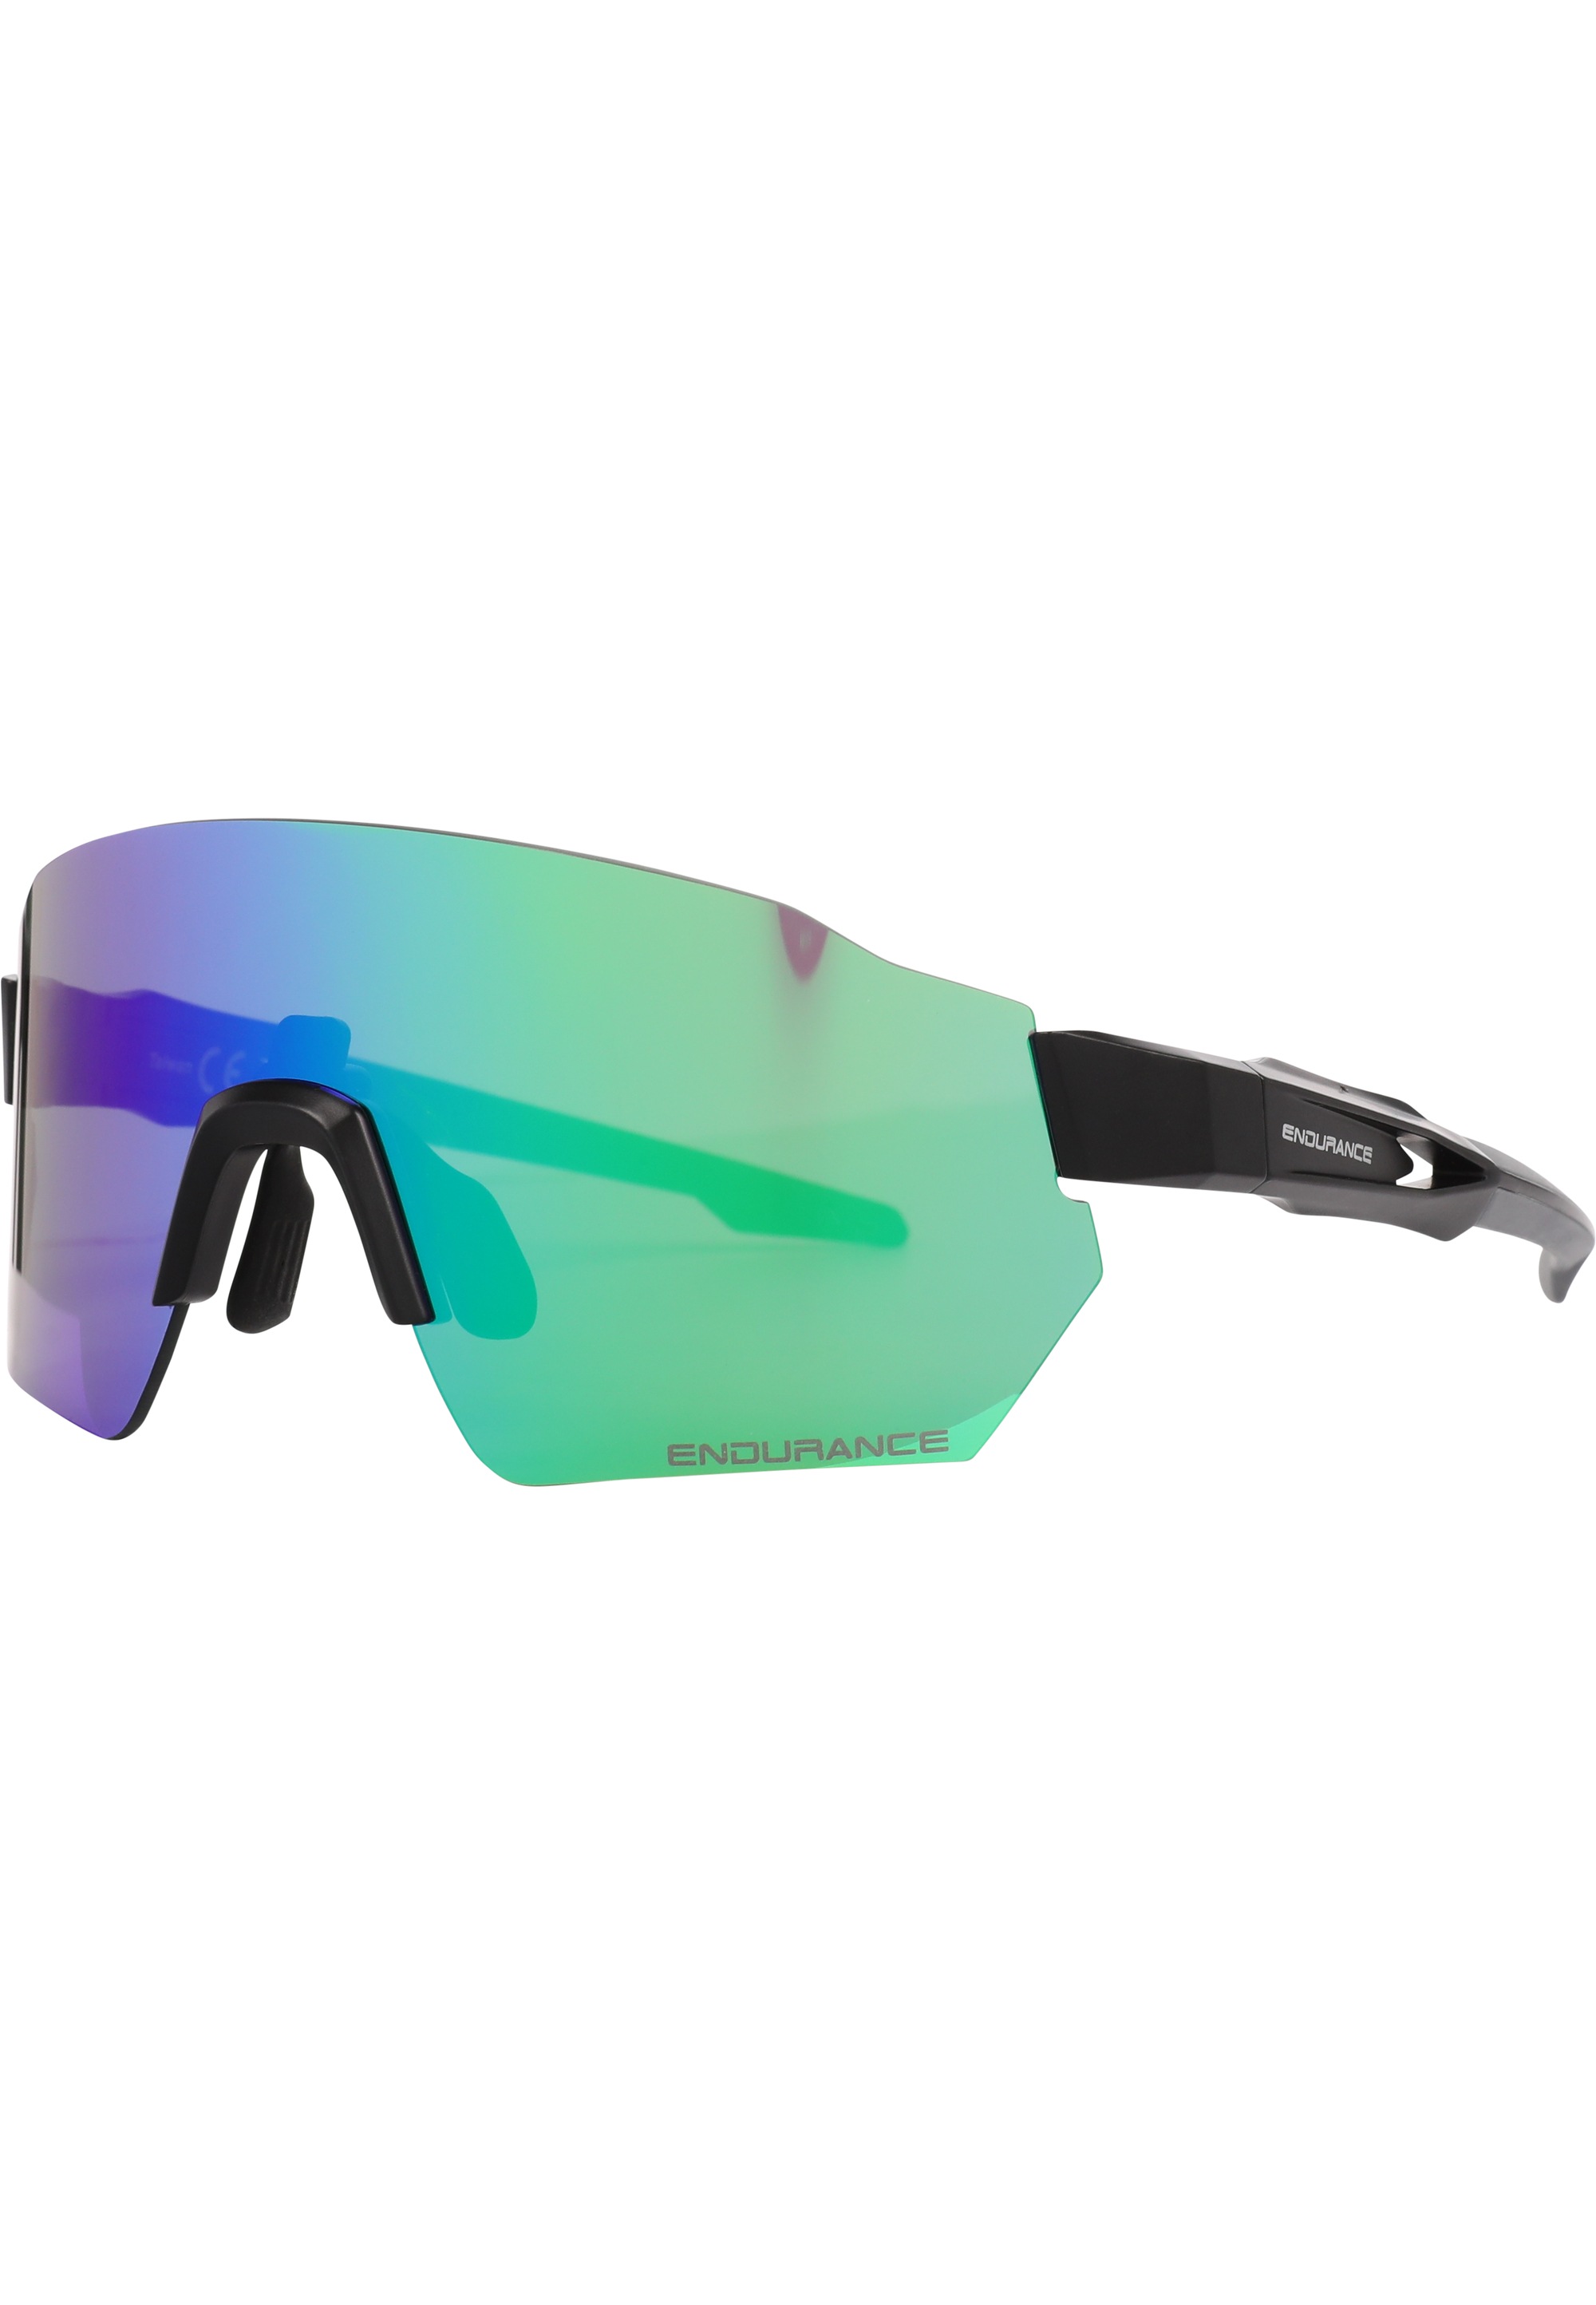 Sportbrille »Mathieu«, mit UV-Schutz und leichtgewichtigem Design